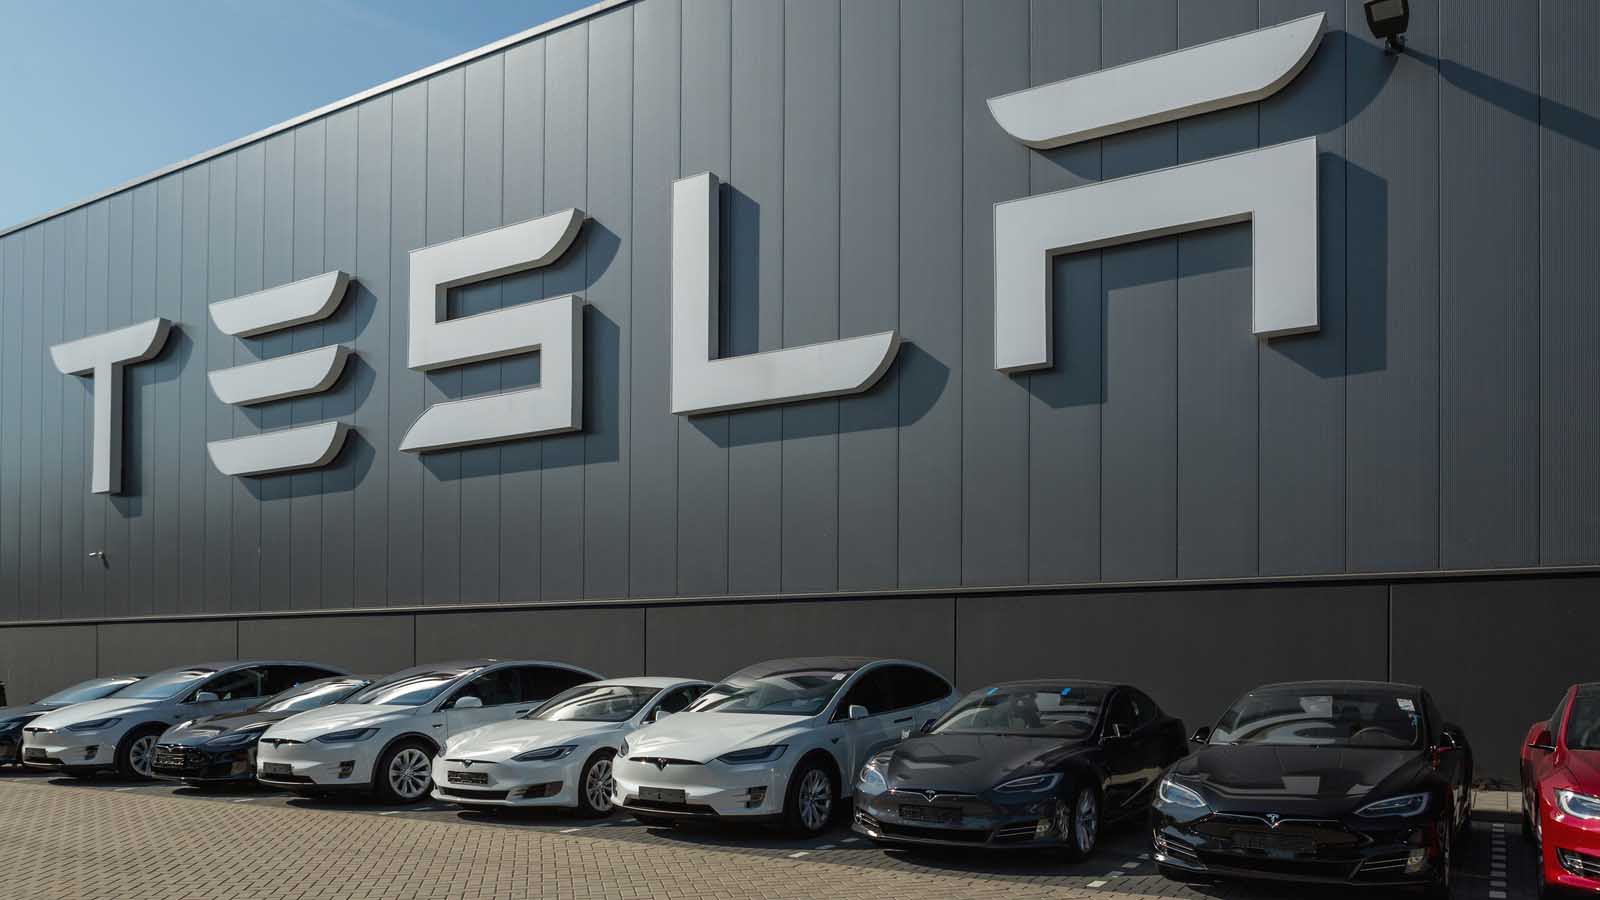 Why Michael Burry Wants to Short Tesla (TSLA) Stock